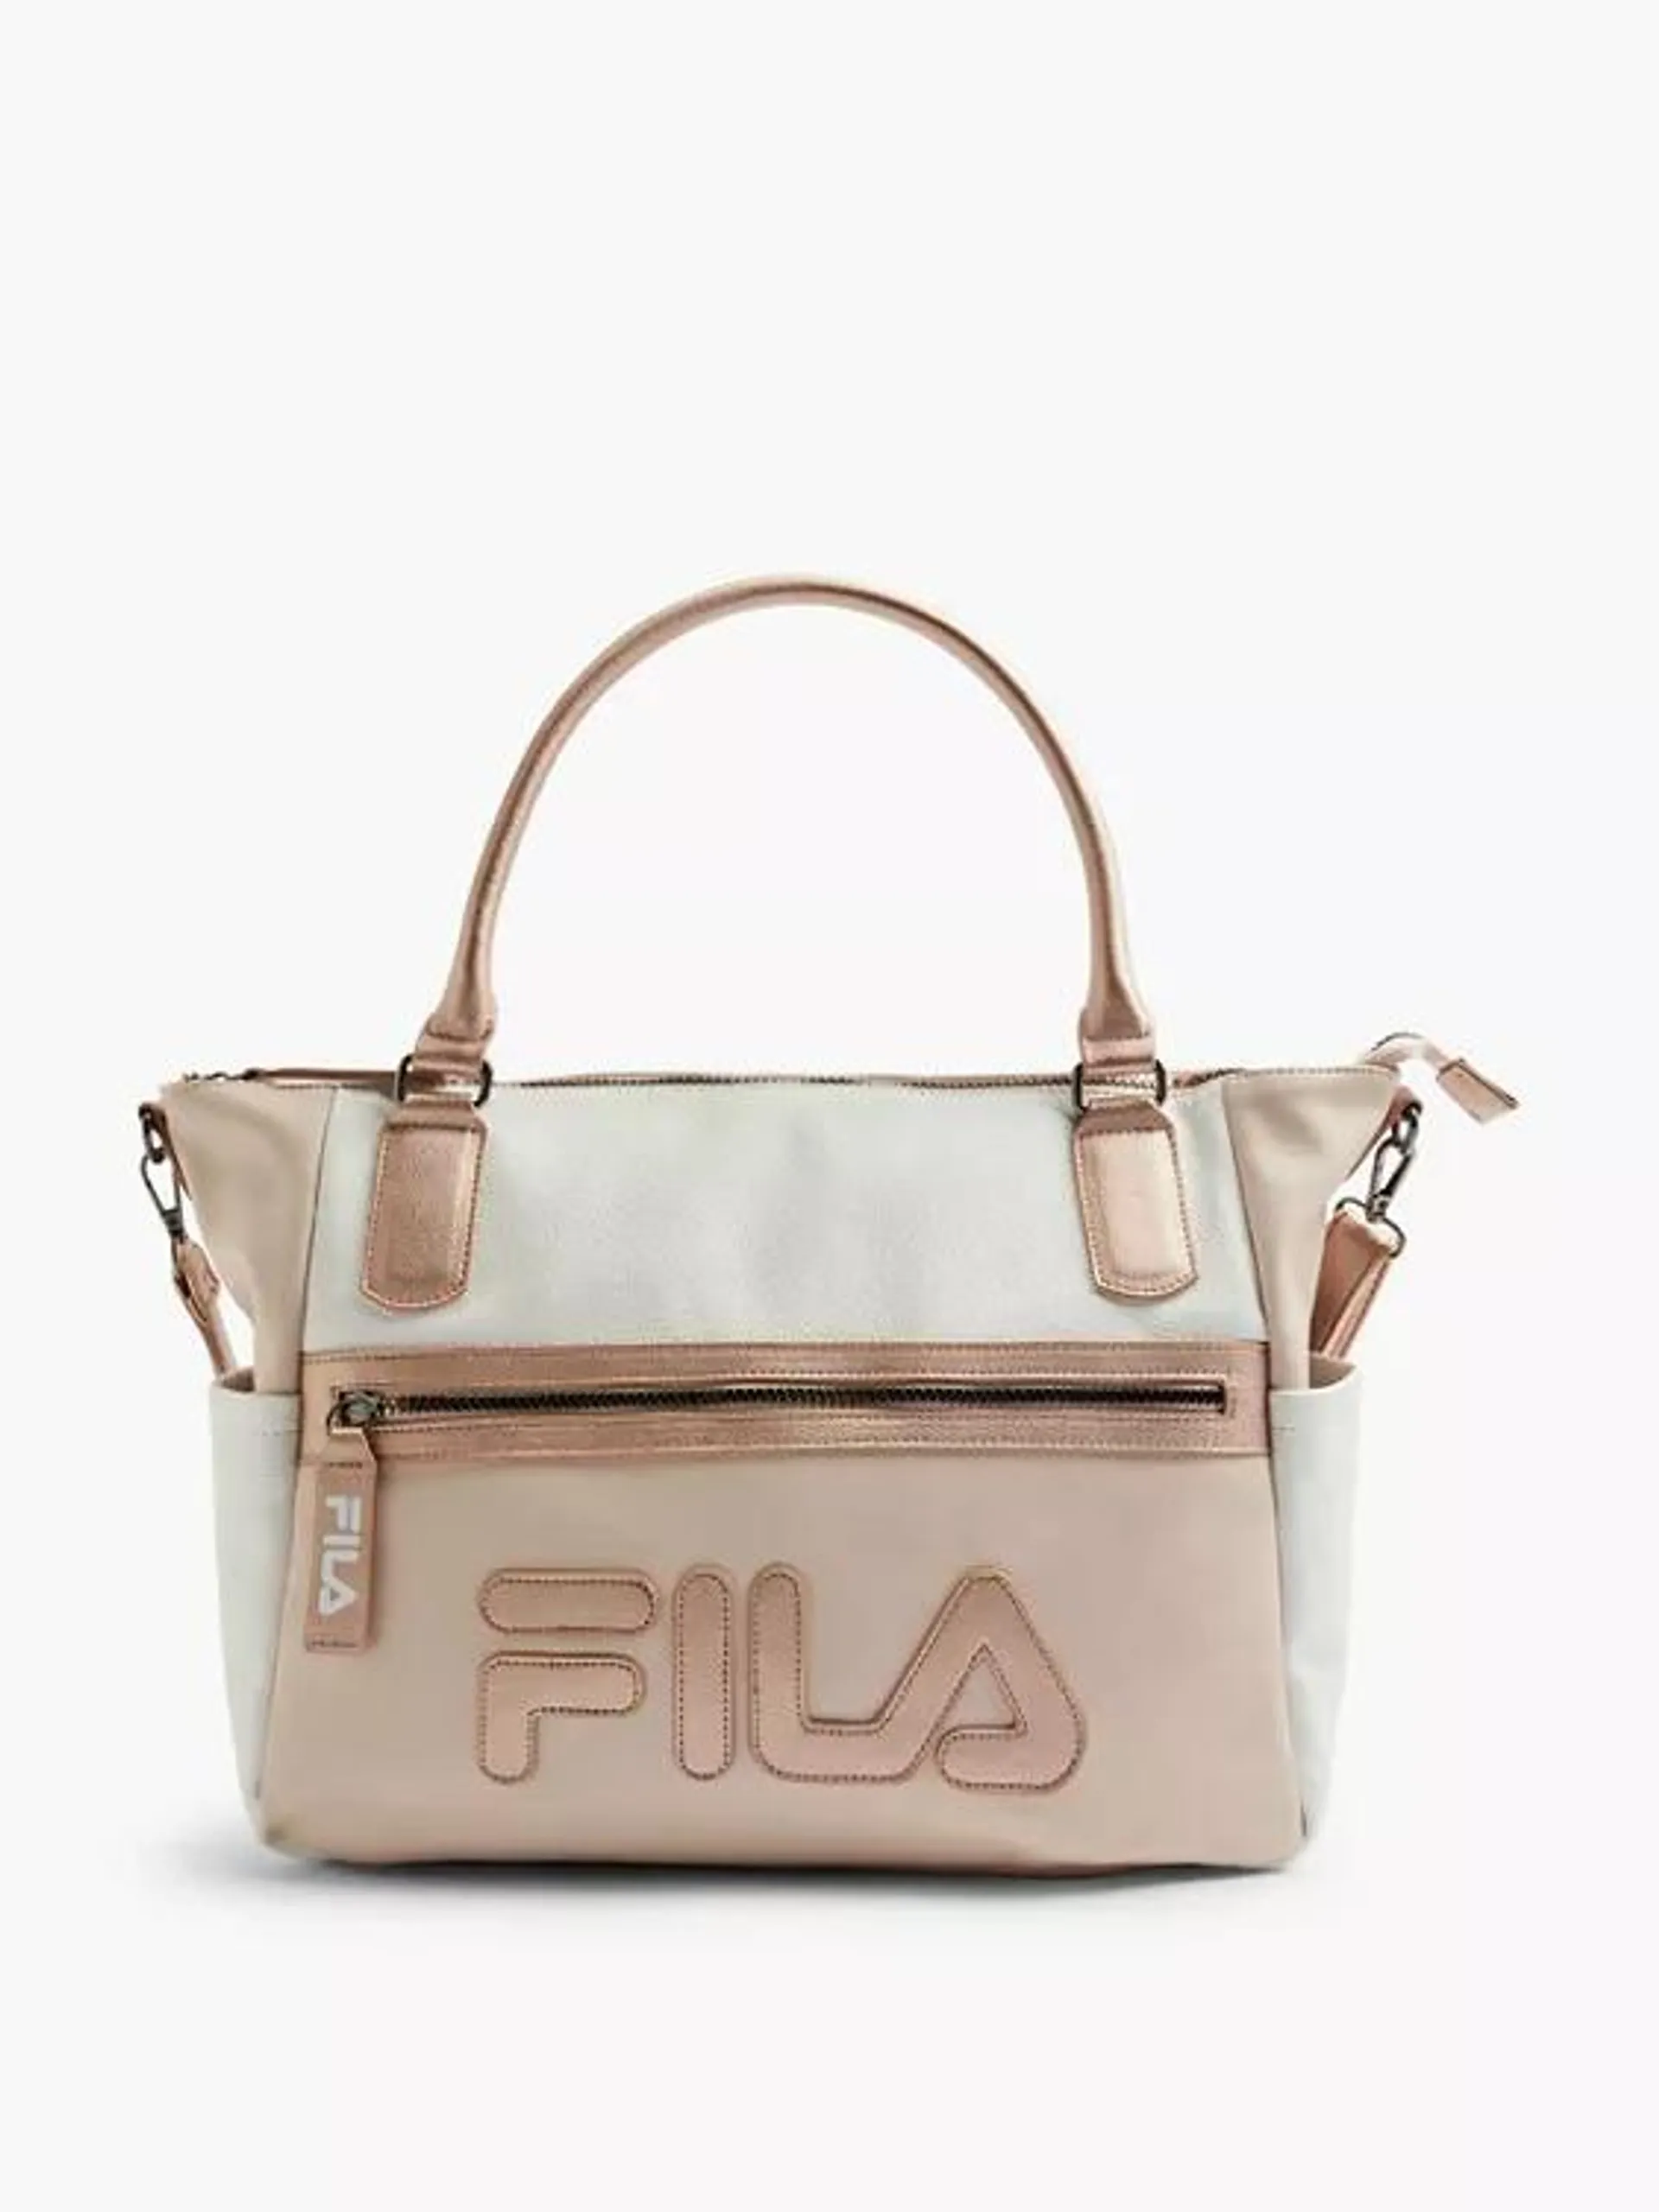 White and Rose Fila Shoulder Bag